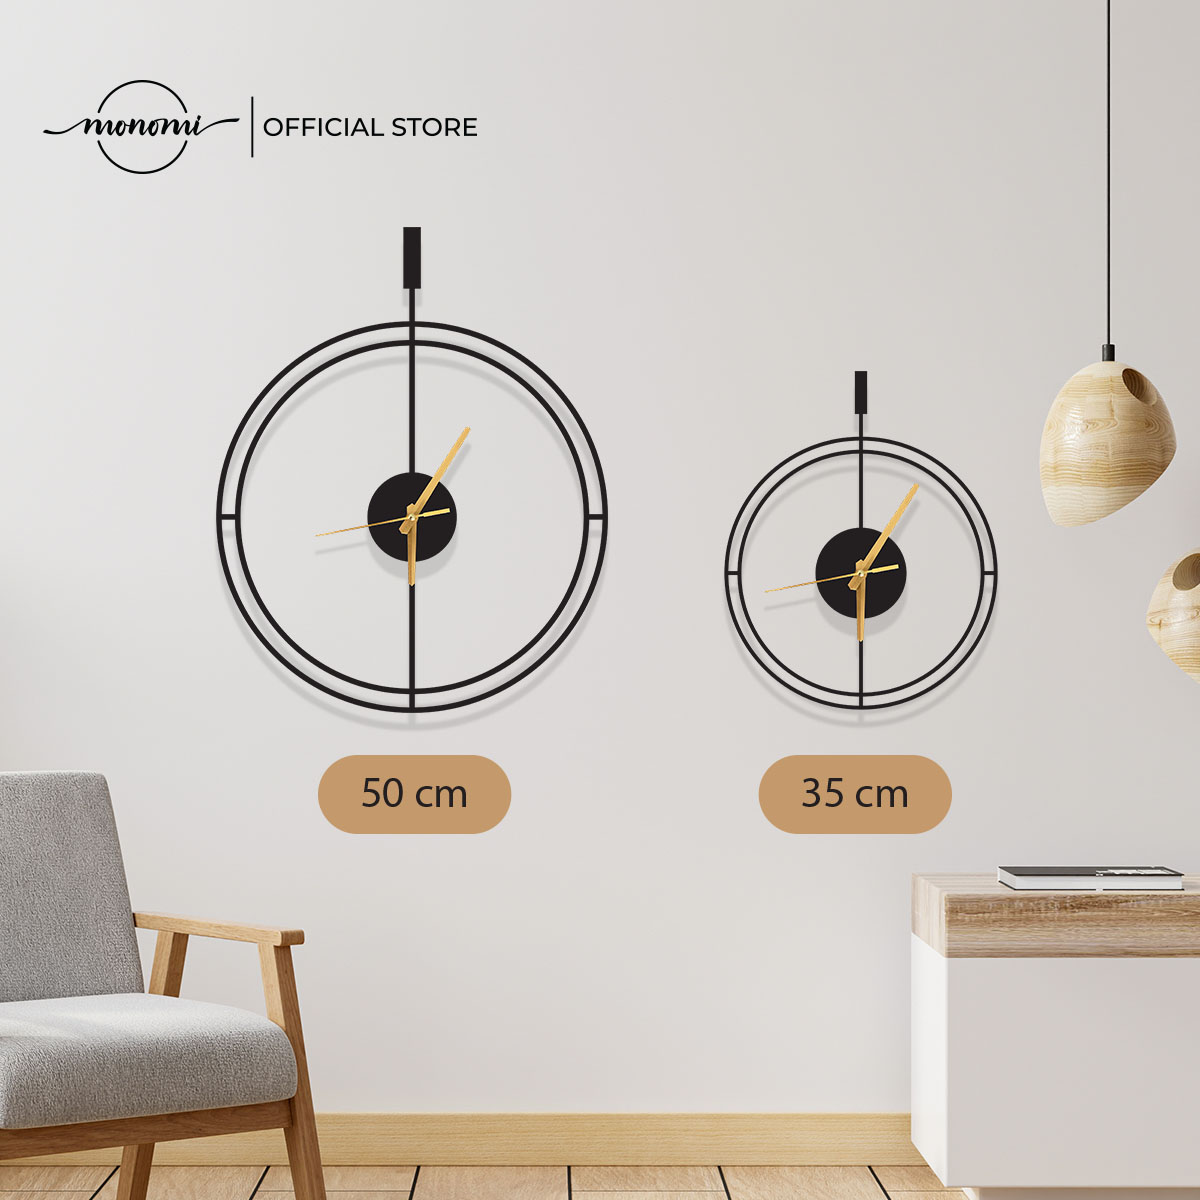 Đồng hồ treo tường Minimalist phong cách tối giản, kiểu dáng hiện đại, CNC Metal Wall Clock - Monomi C016